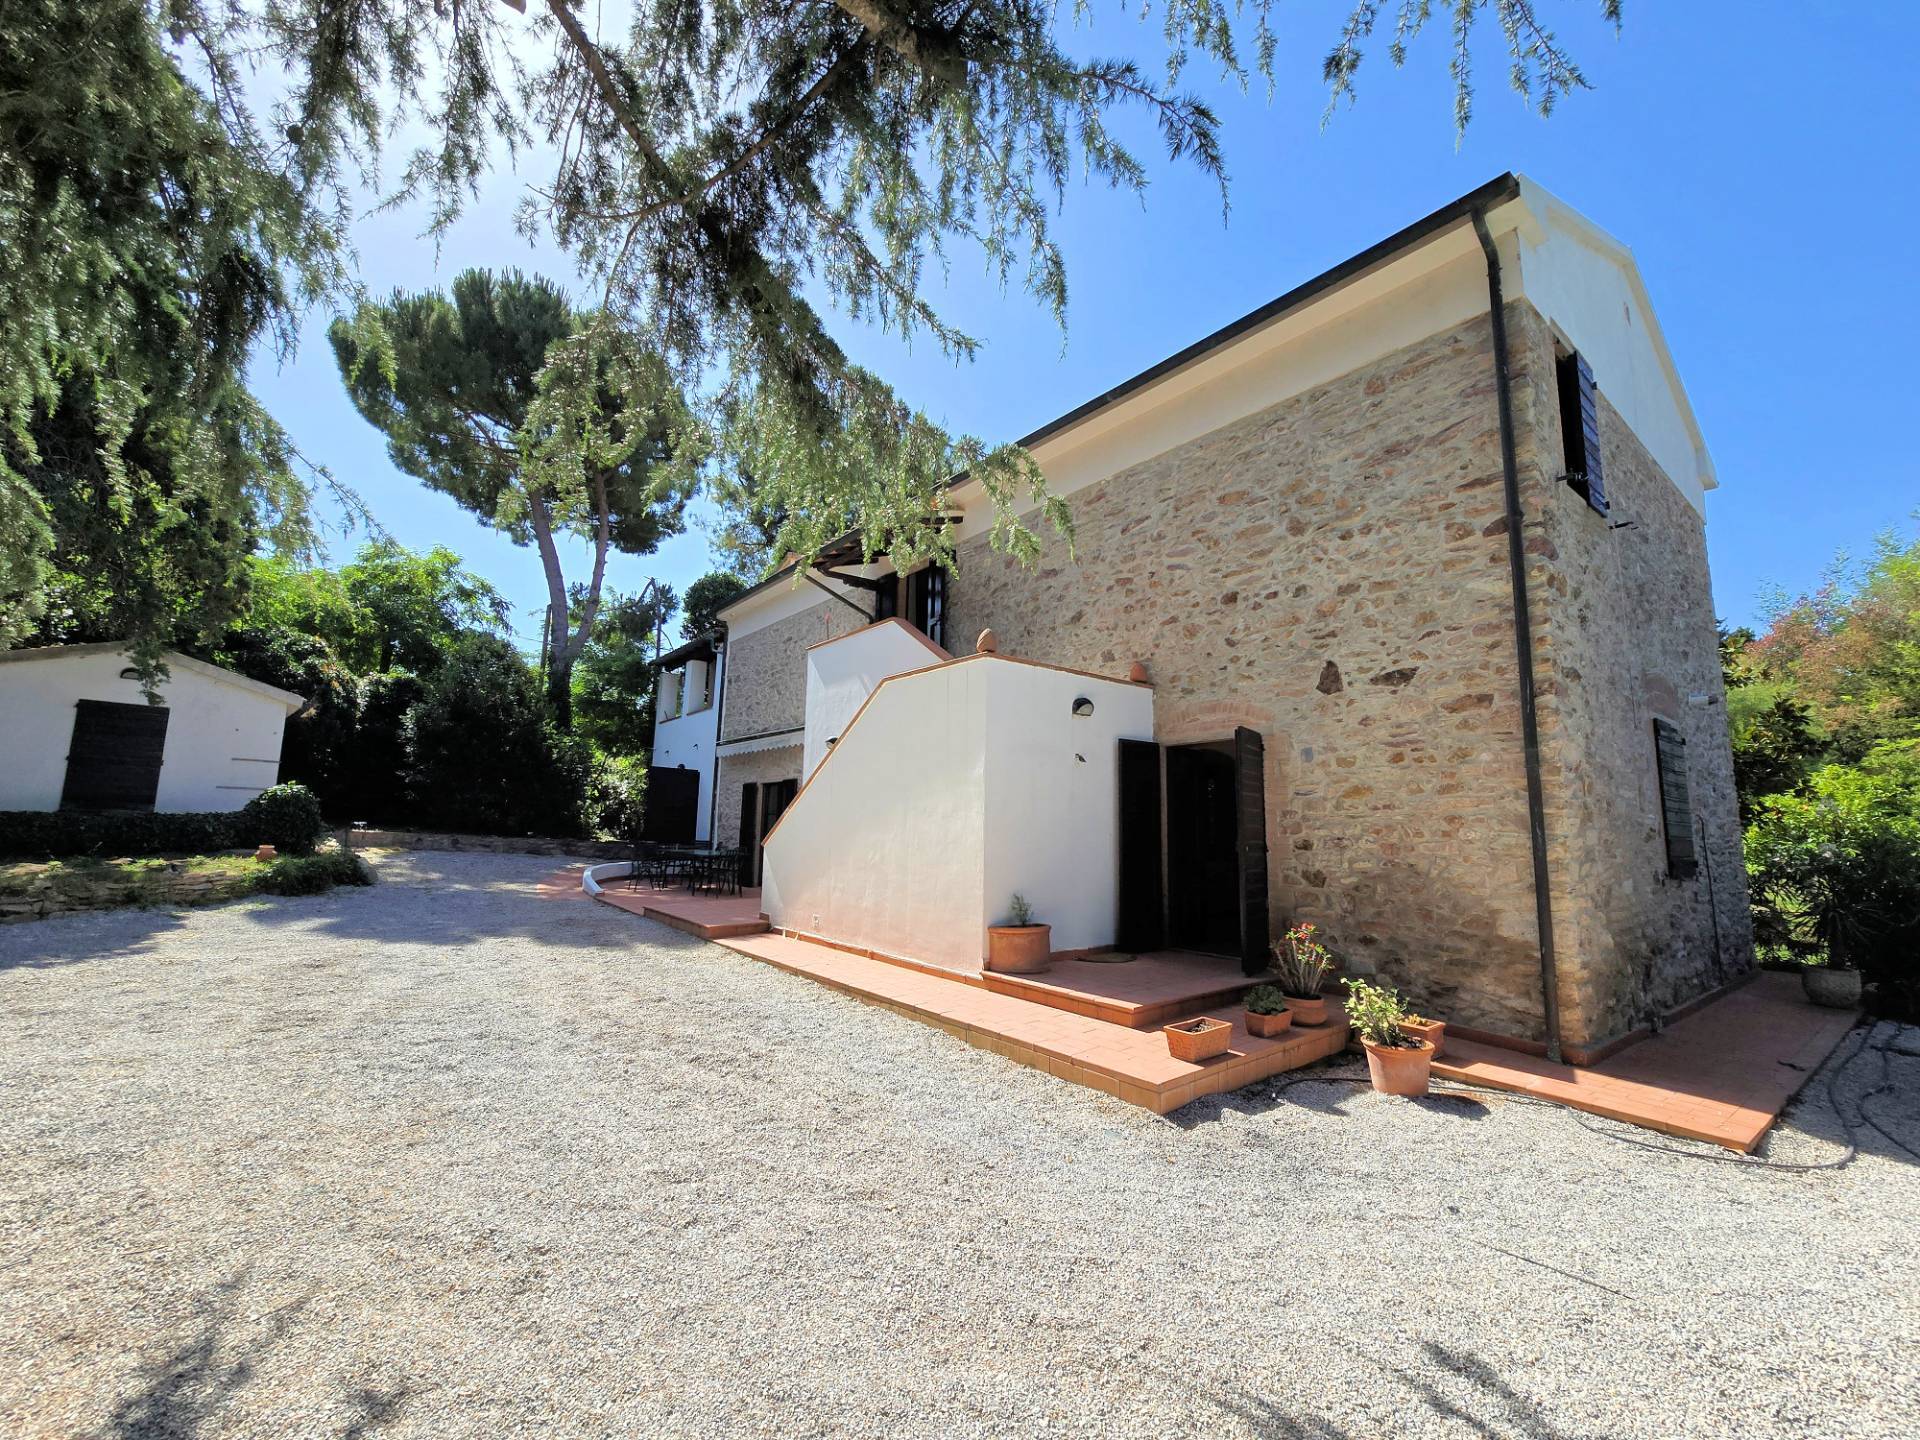 1502-Casa indipendente in stile rustico Toscano con terreno-Campiglia Marittima-1 Agenzia Immobiliare ASIP